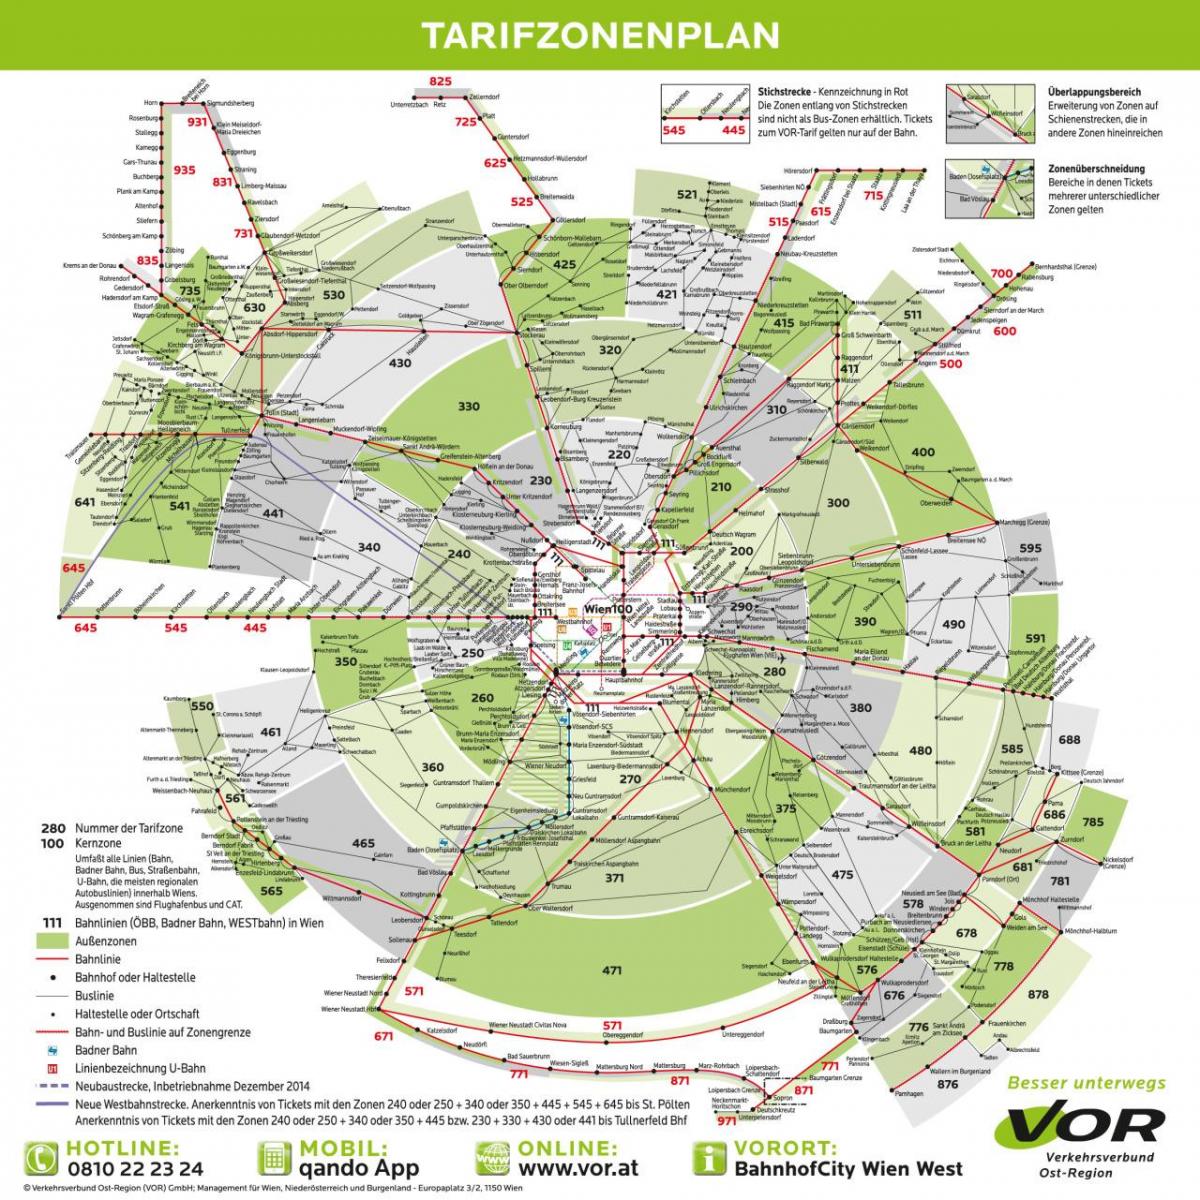 Mappa di Vienna della metropolitana della zona 100